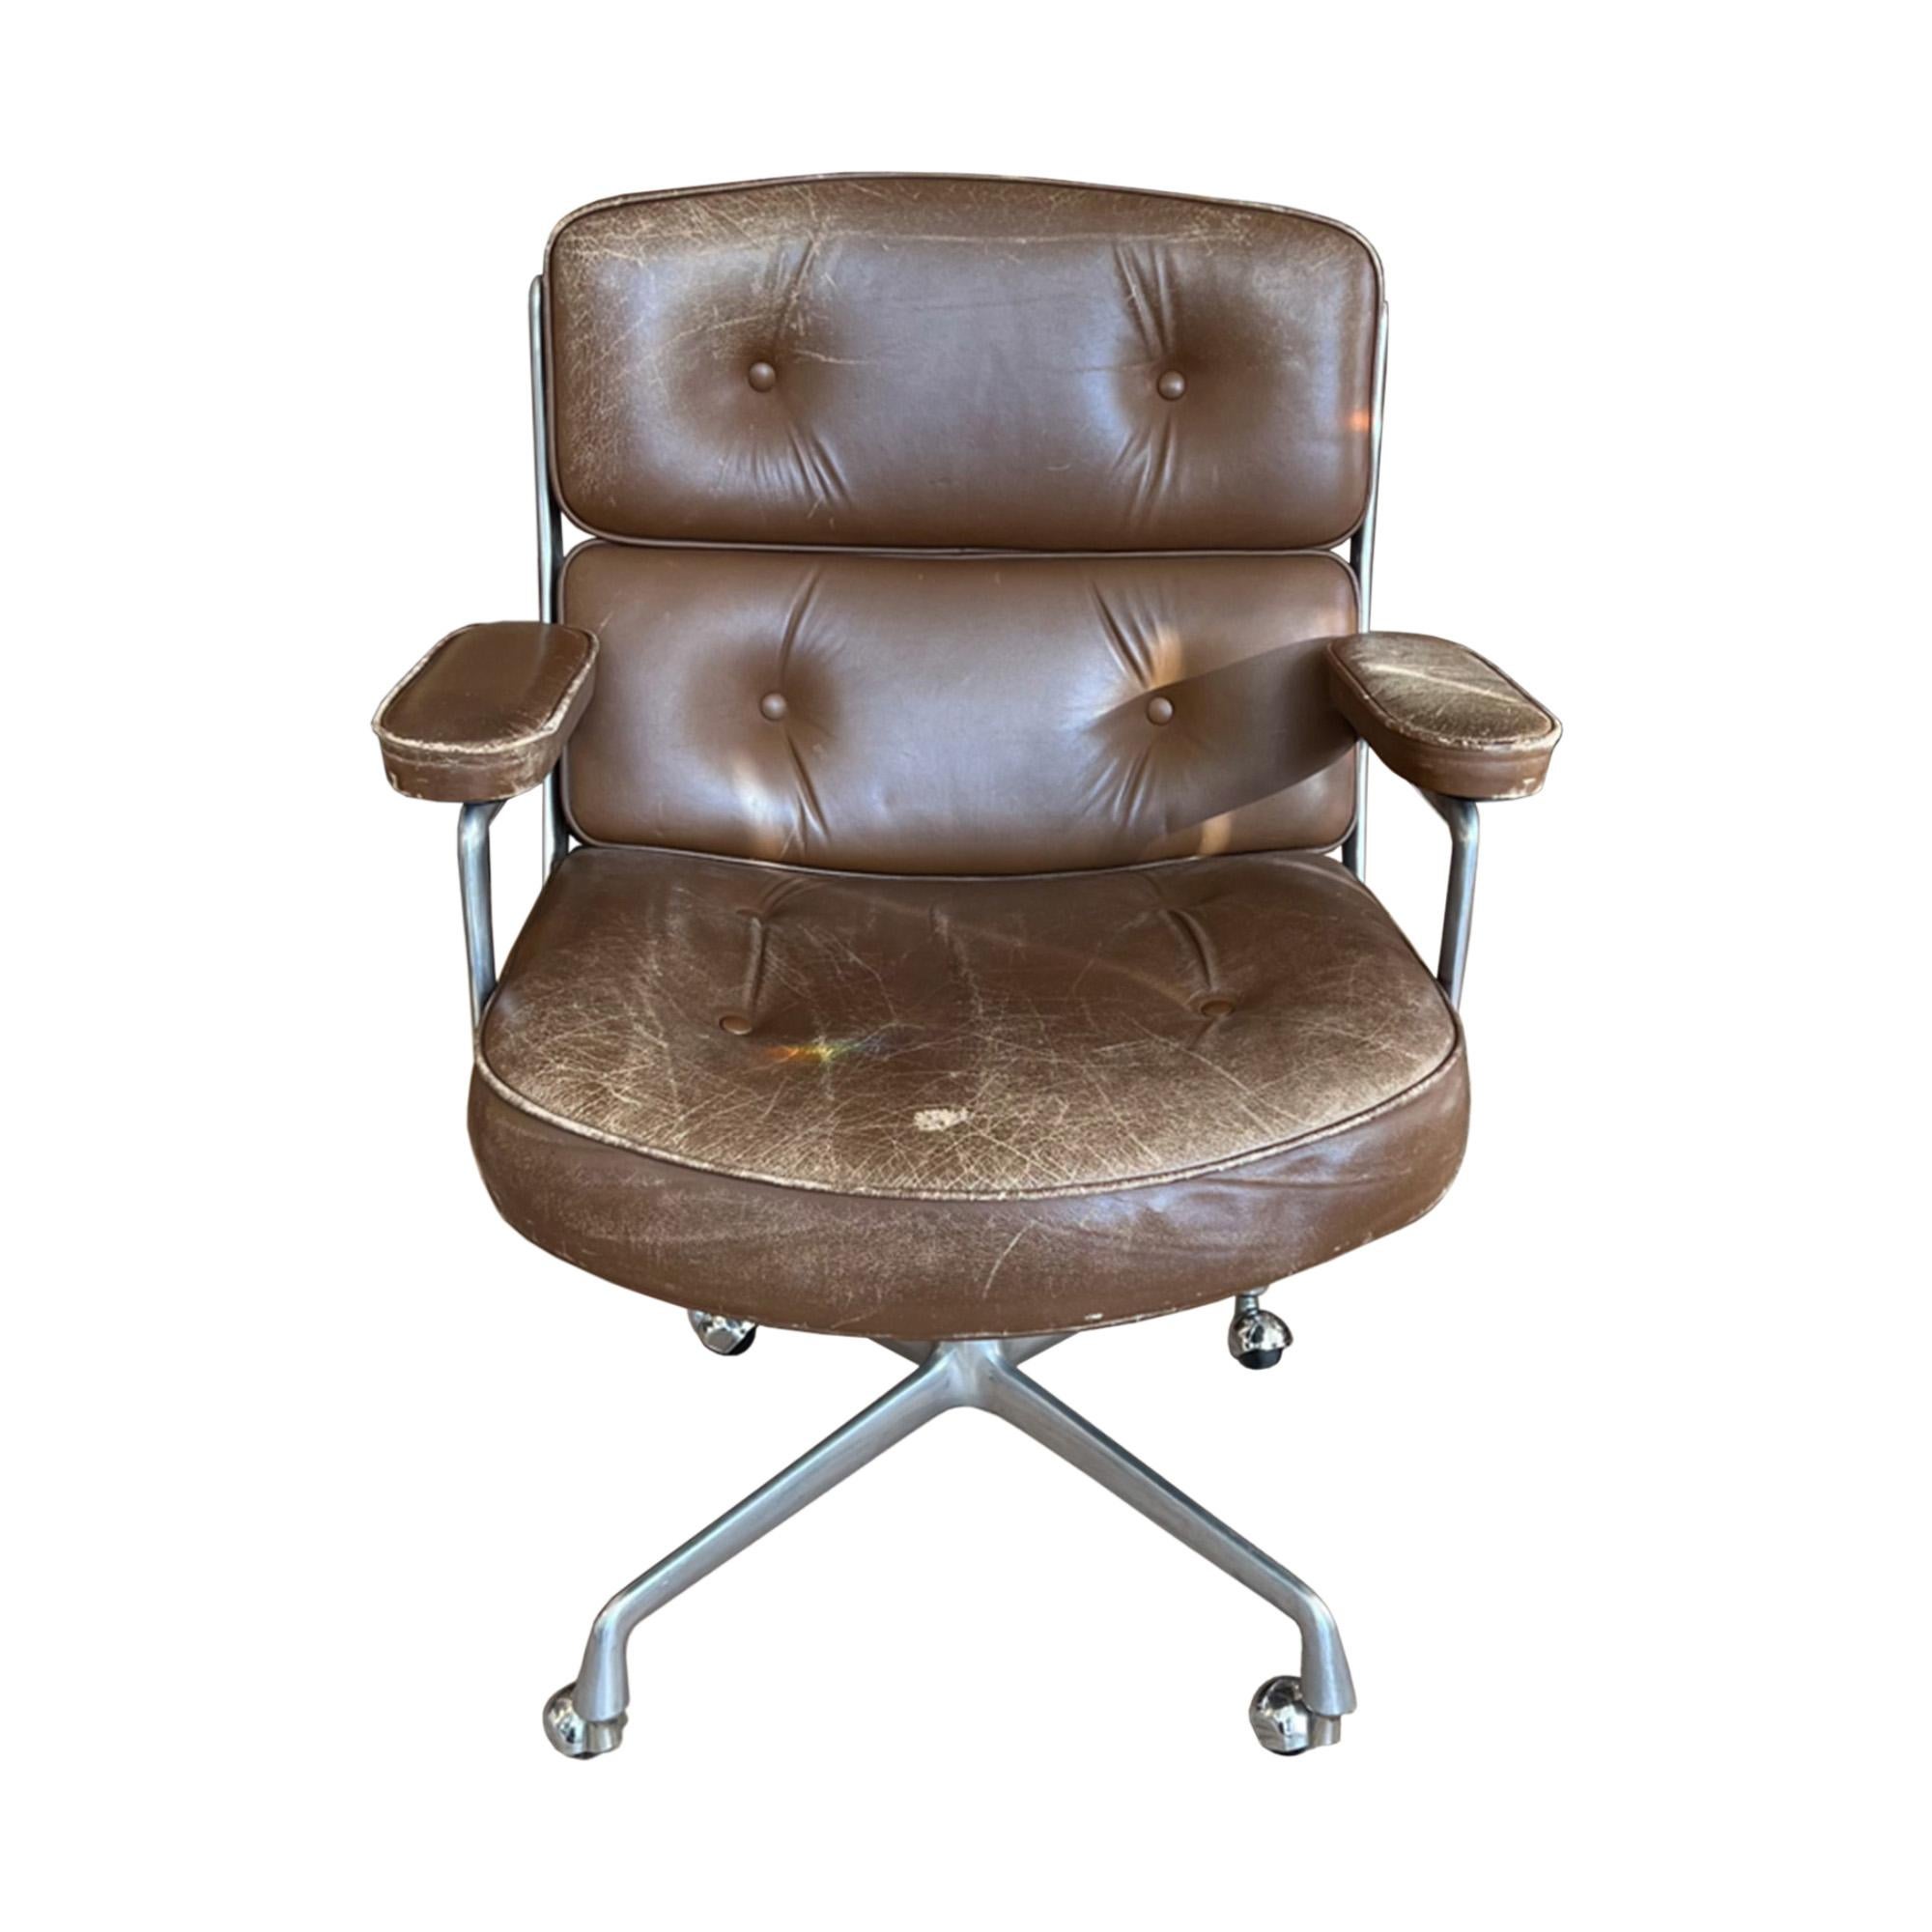 Voici un classique intemporel - cette chaise Eames Time Life Lobby a été fabriquée par Mobilier International, en France, dans les années 1960. 

La chaise repose sur les 4 roulettes d'origine, pivote sur 360 degrés et le dossier s'incline lorsque